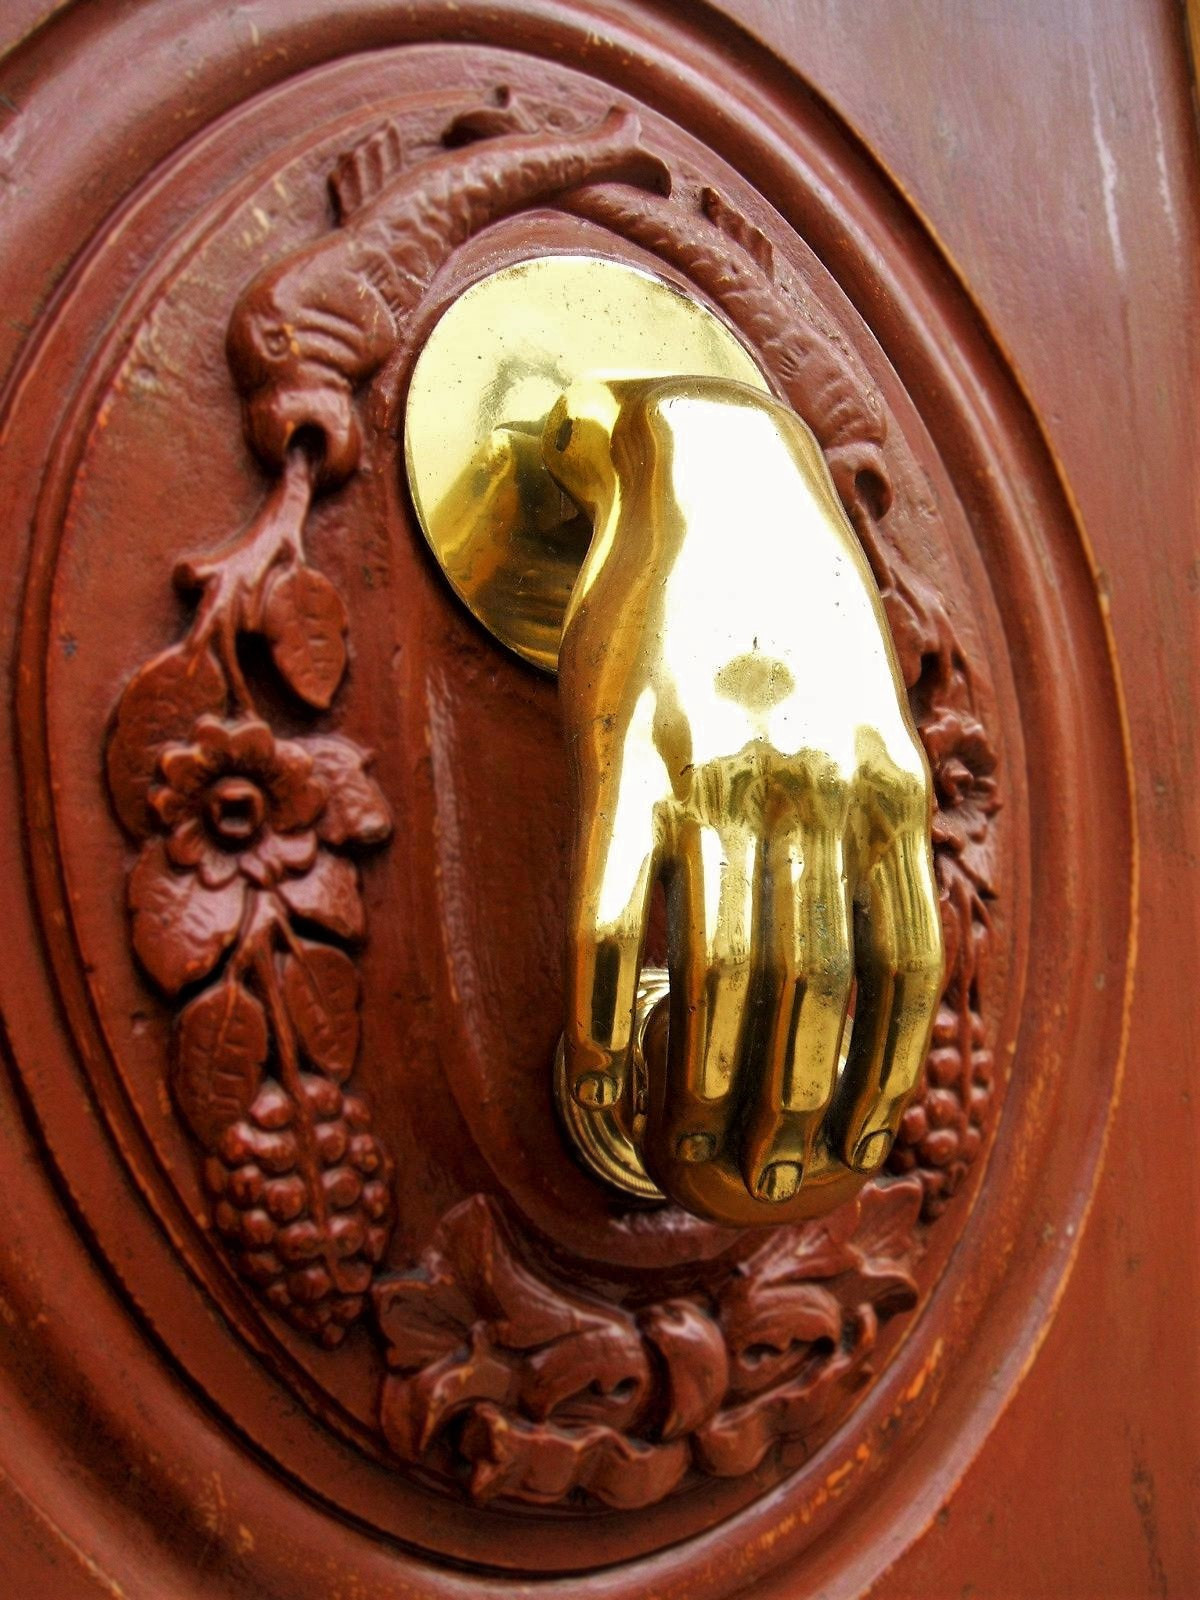 Hand door knocker from Jaén, Spain. Credit Zarateman